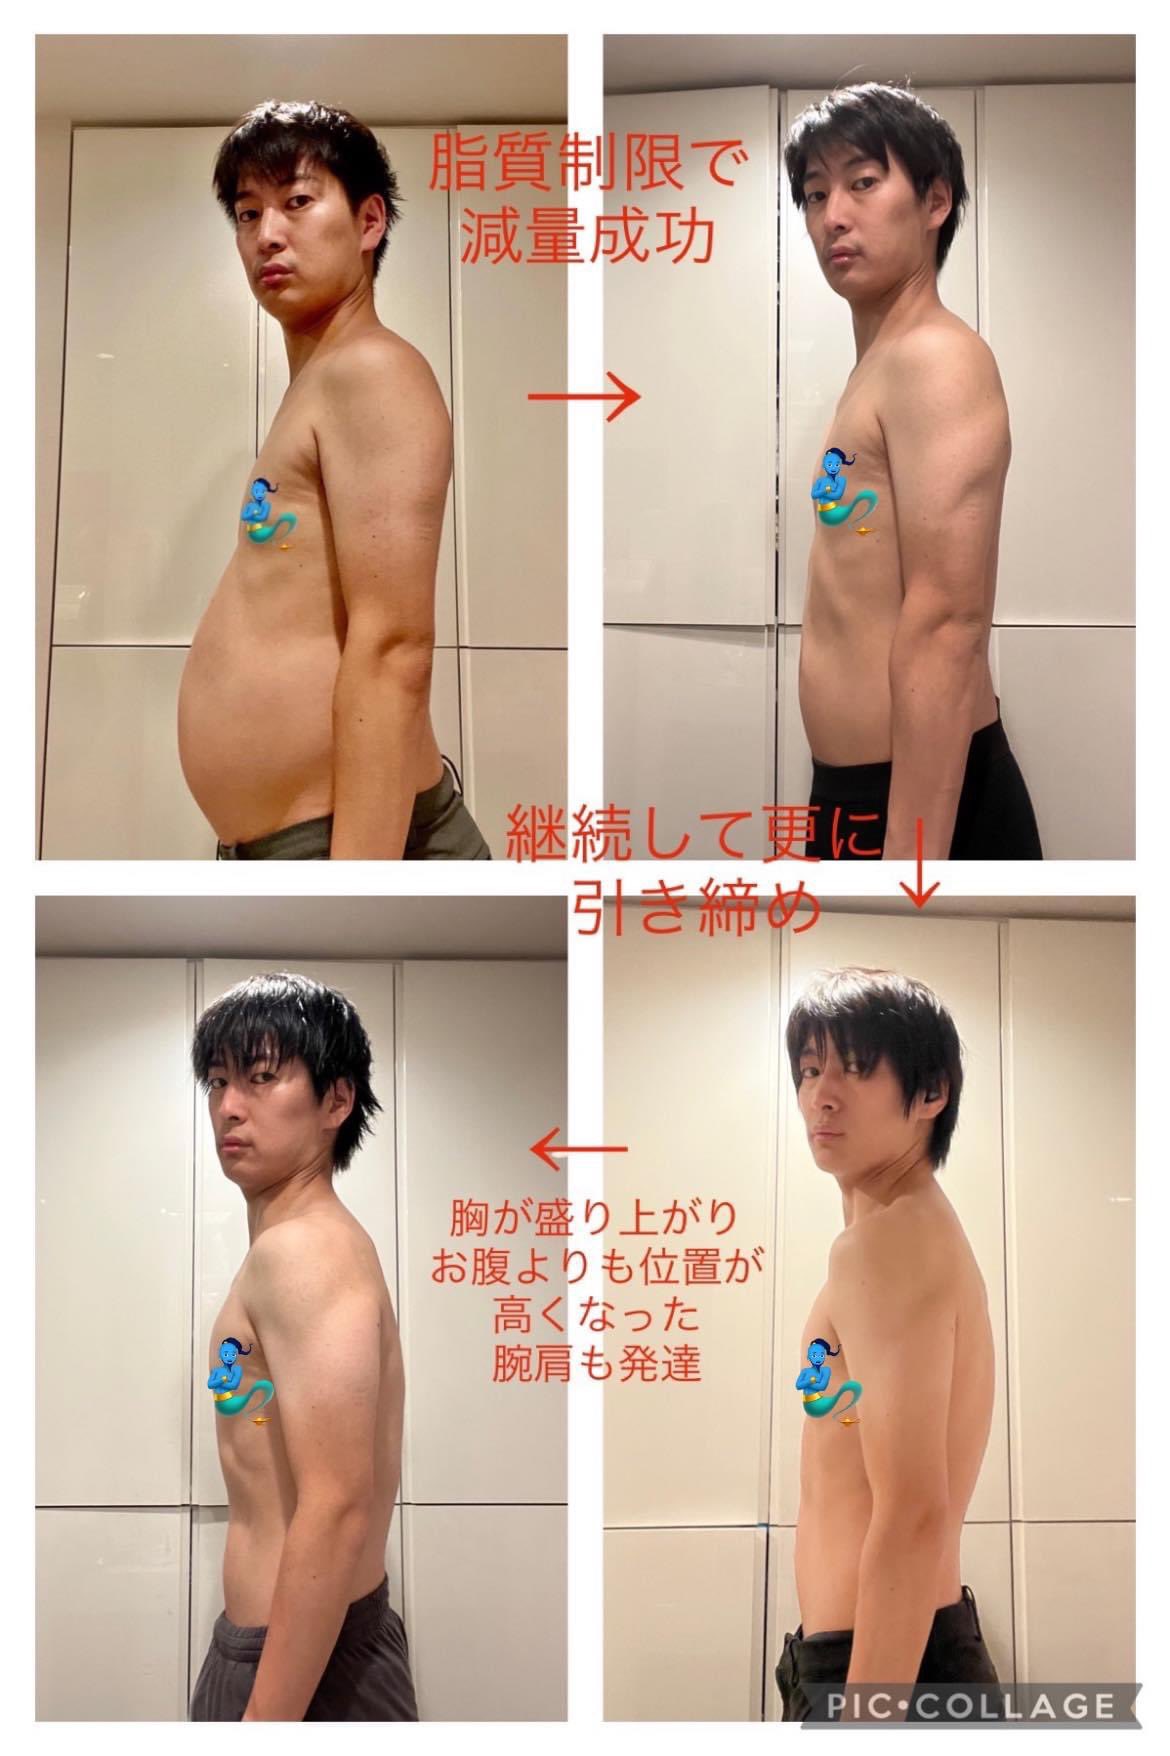 5ヵ月で10kg以上痩せた男性の写真